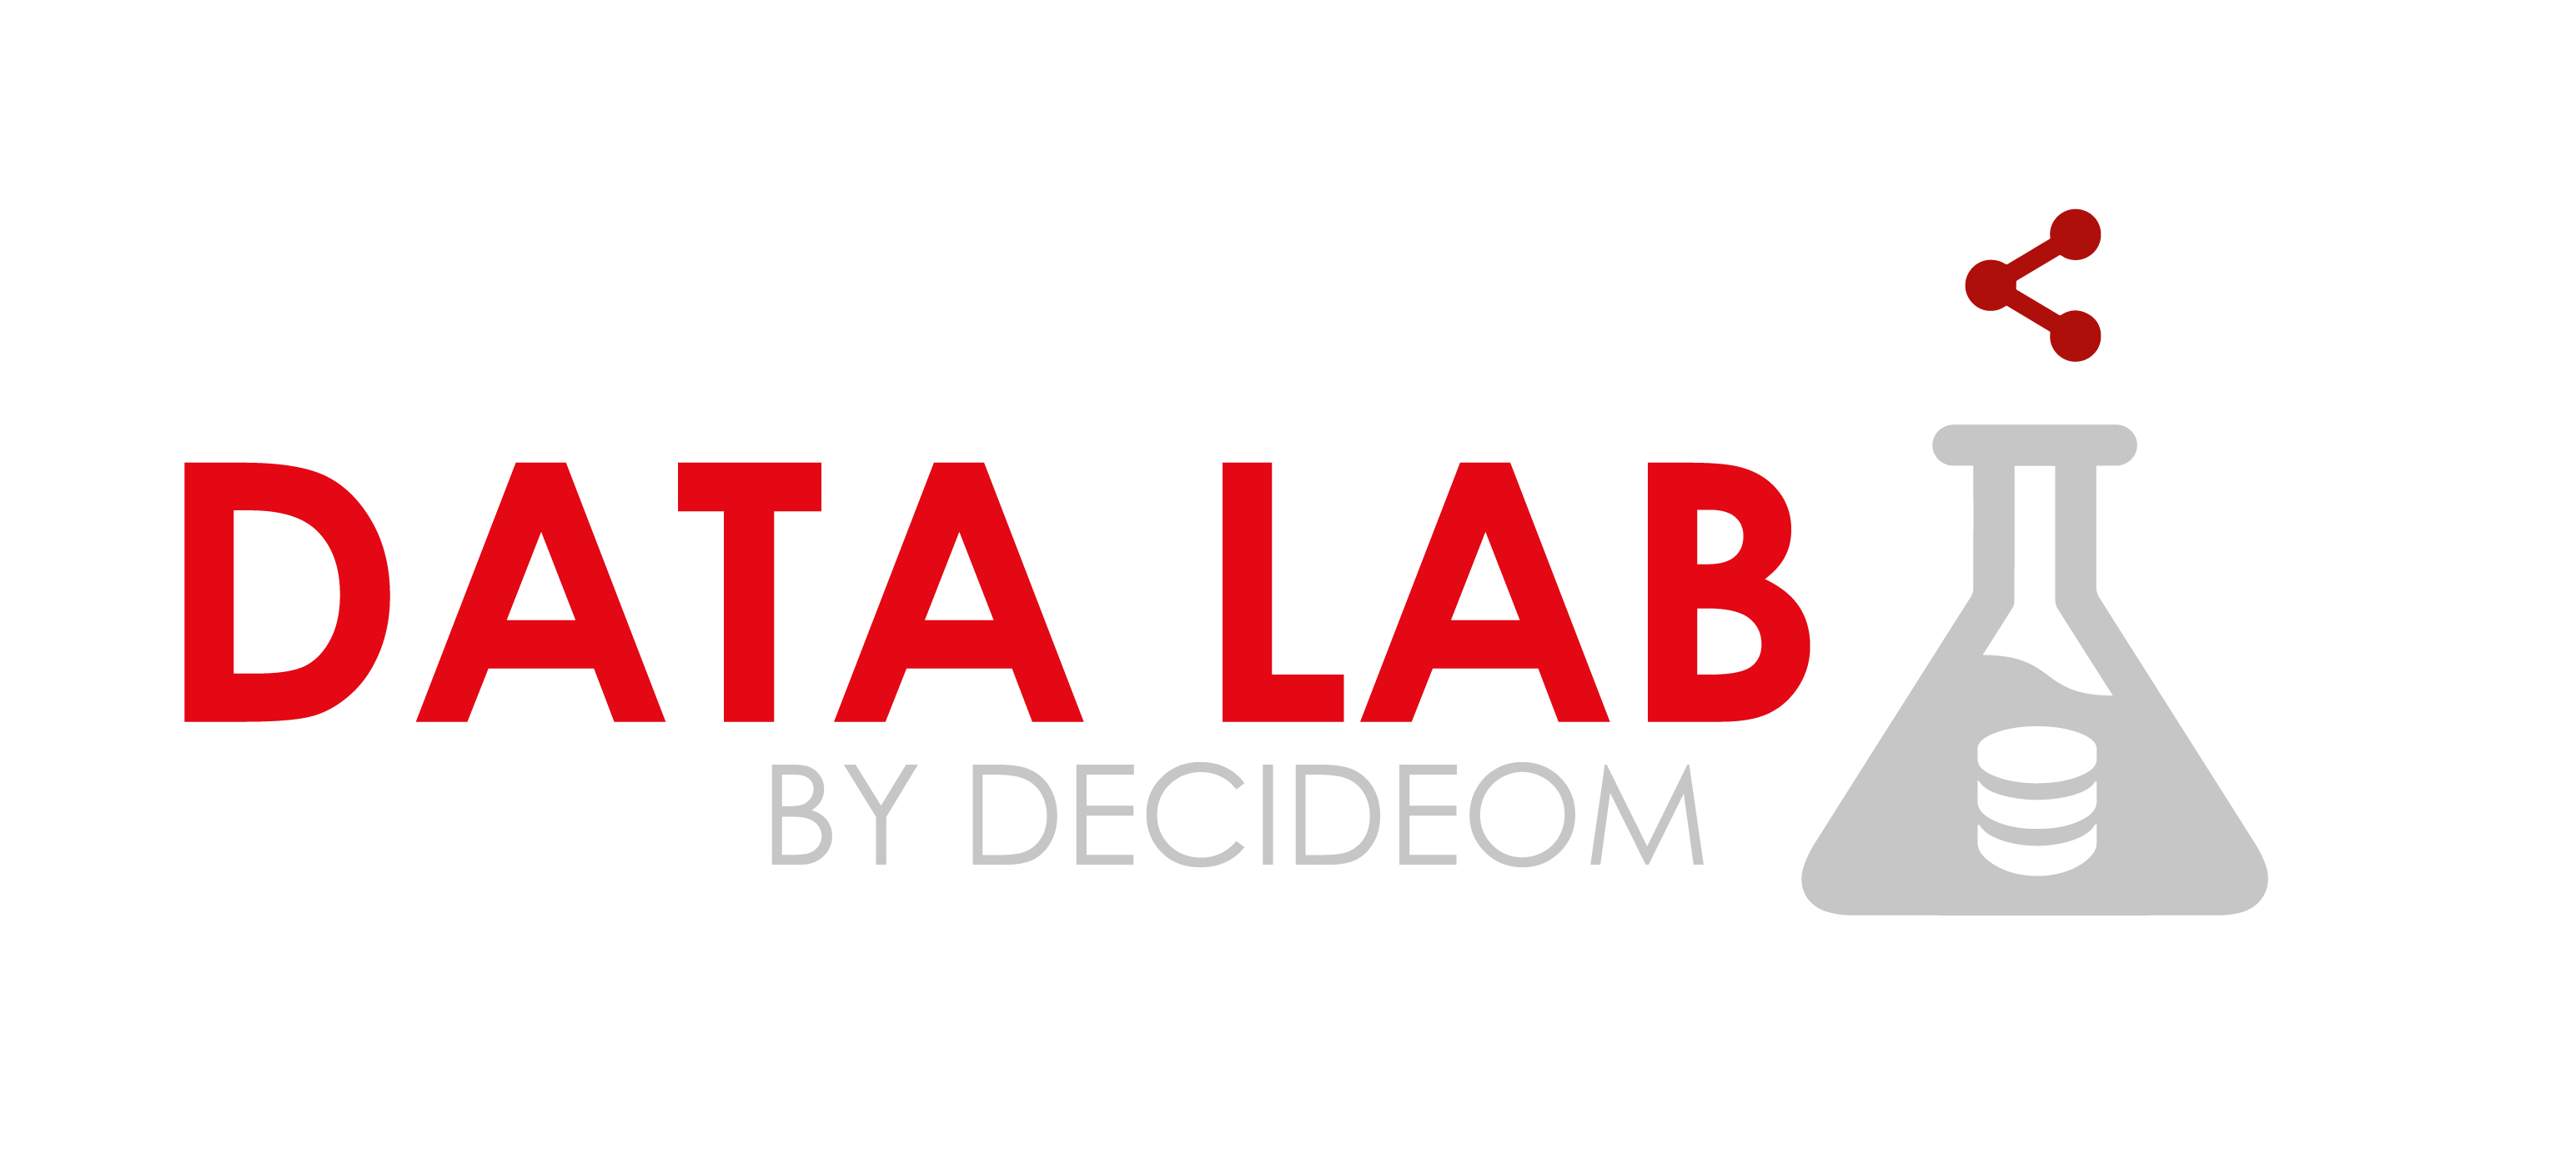 Data Lab DecideOm